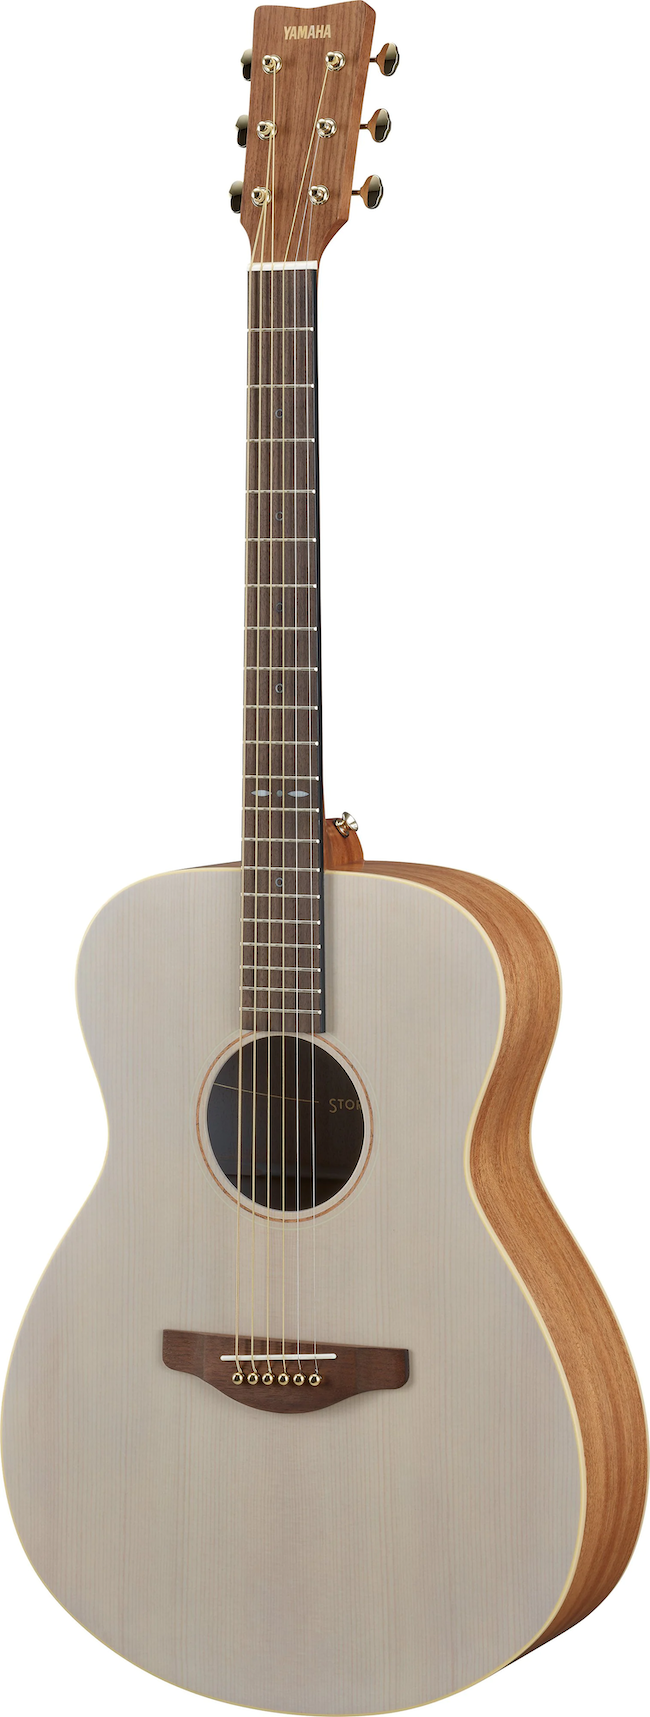 Yamaha STORIA I Acoustic Guitar - Off-White